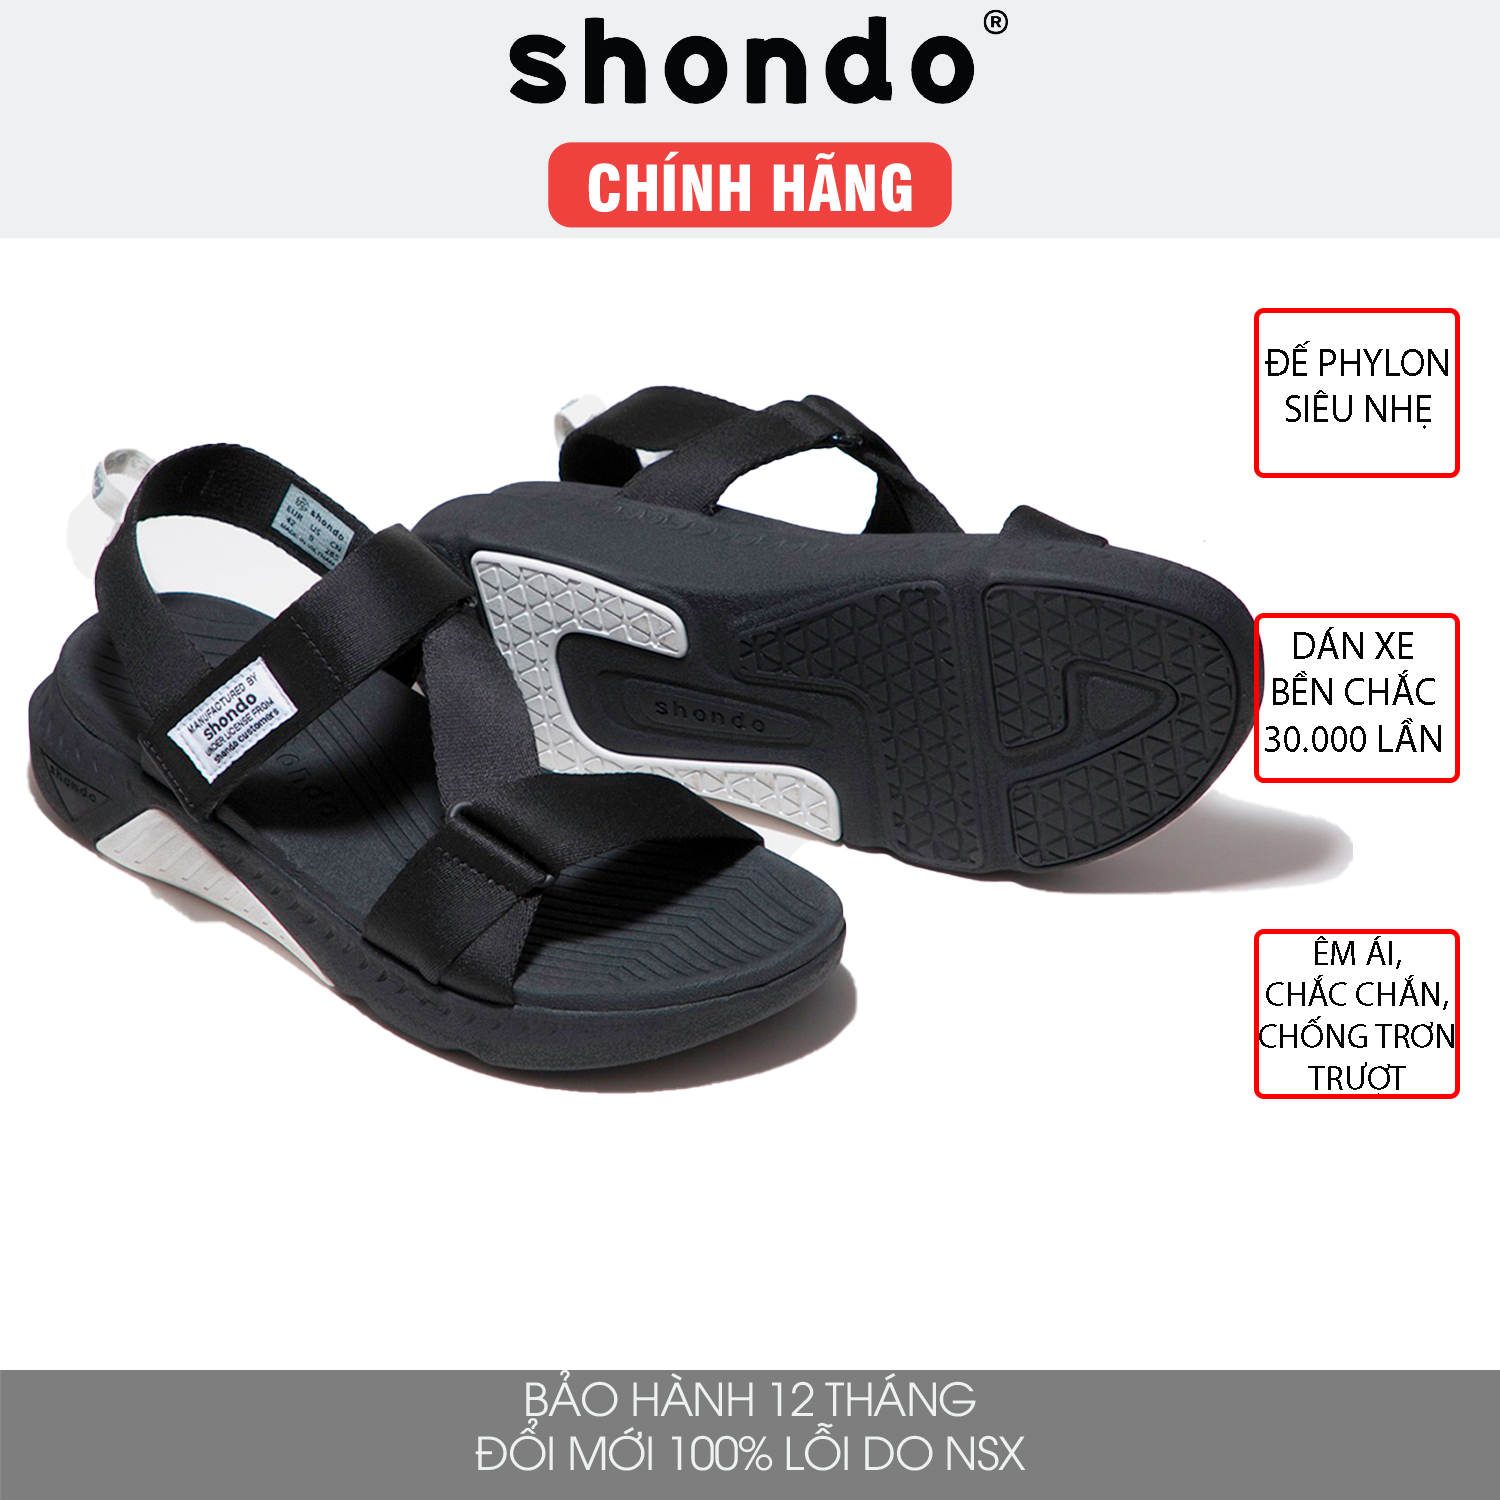 Giày sandal Shondo F7 nam nữ đi học đế cao đen fulll F7R1010